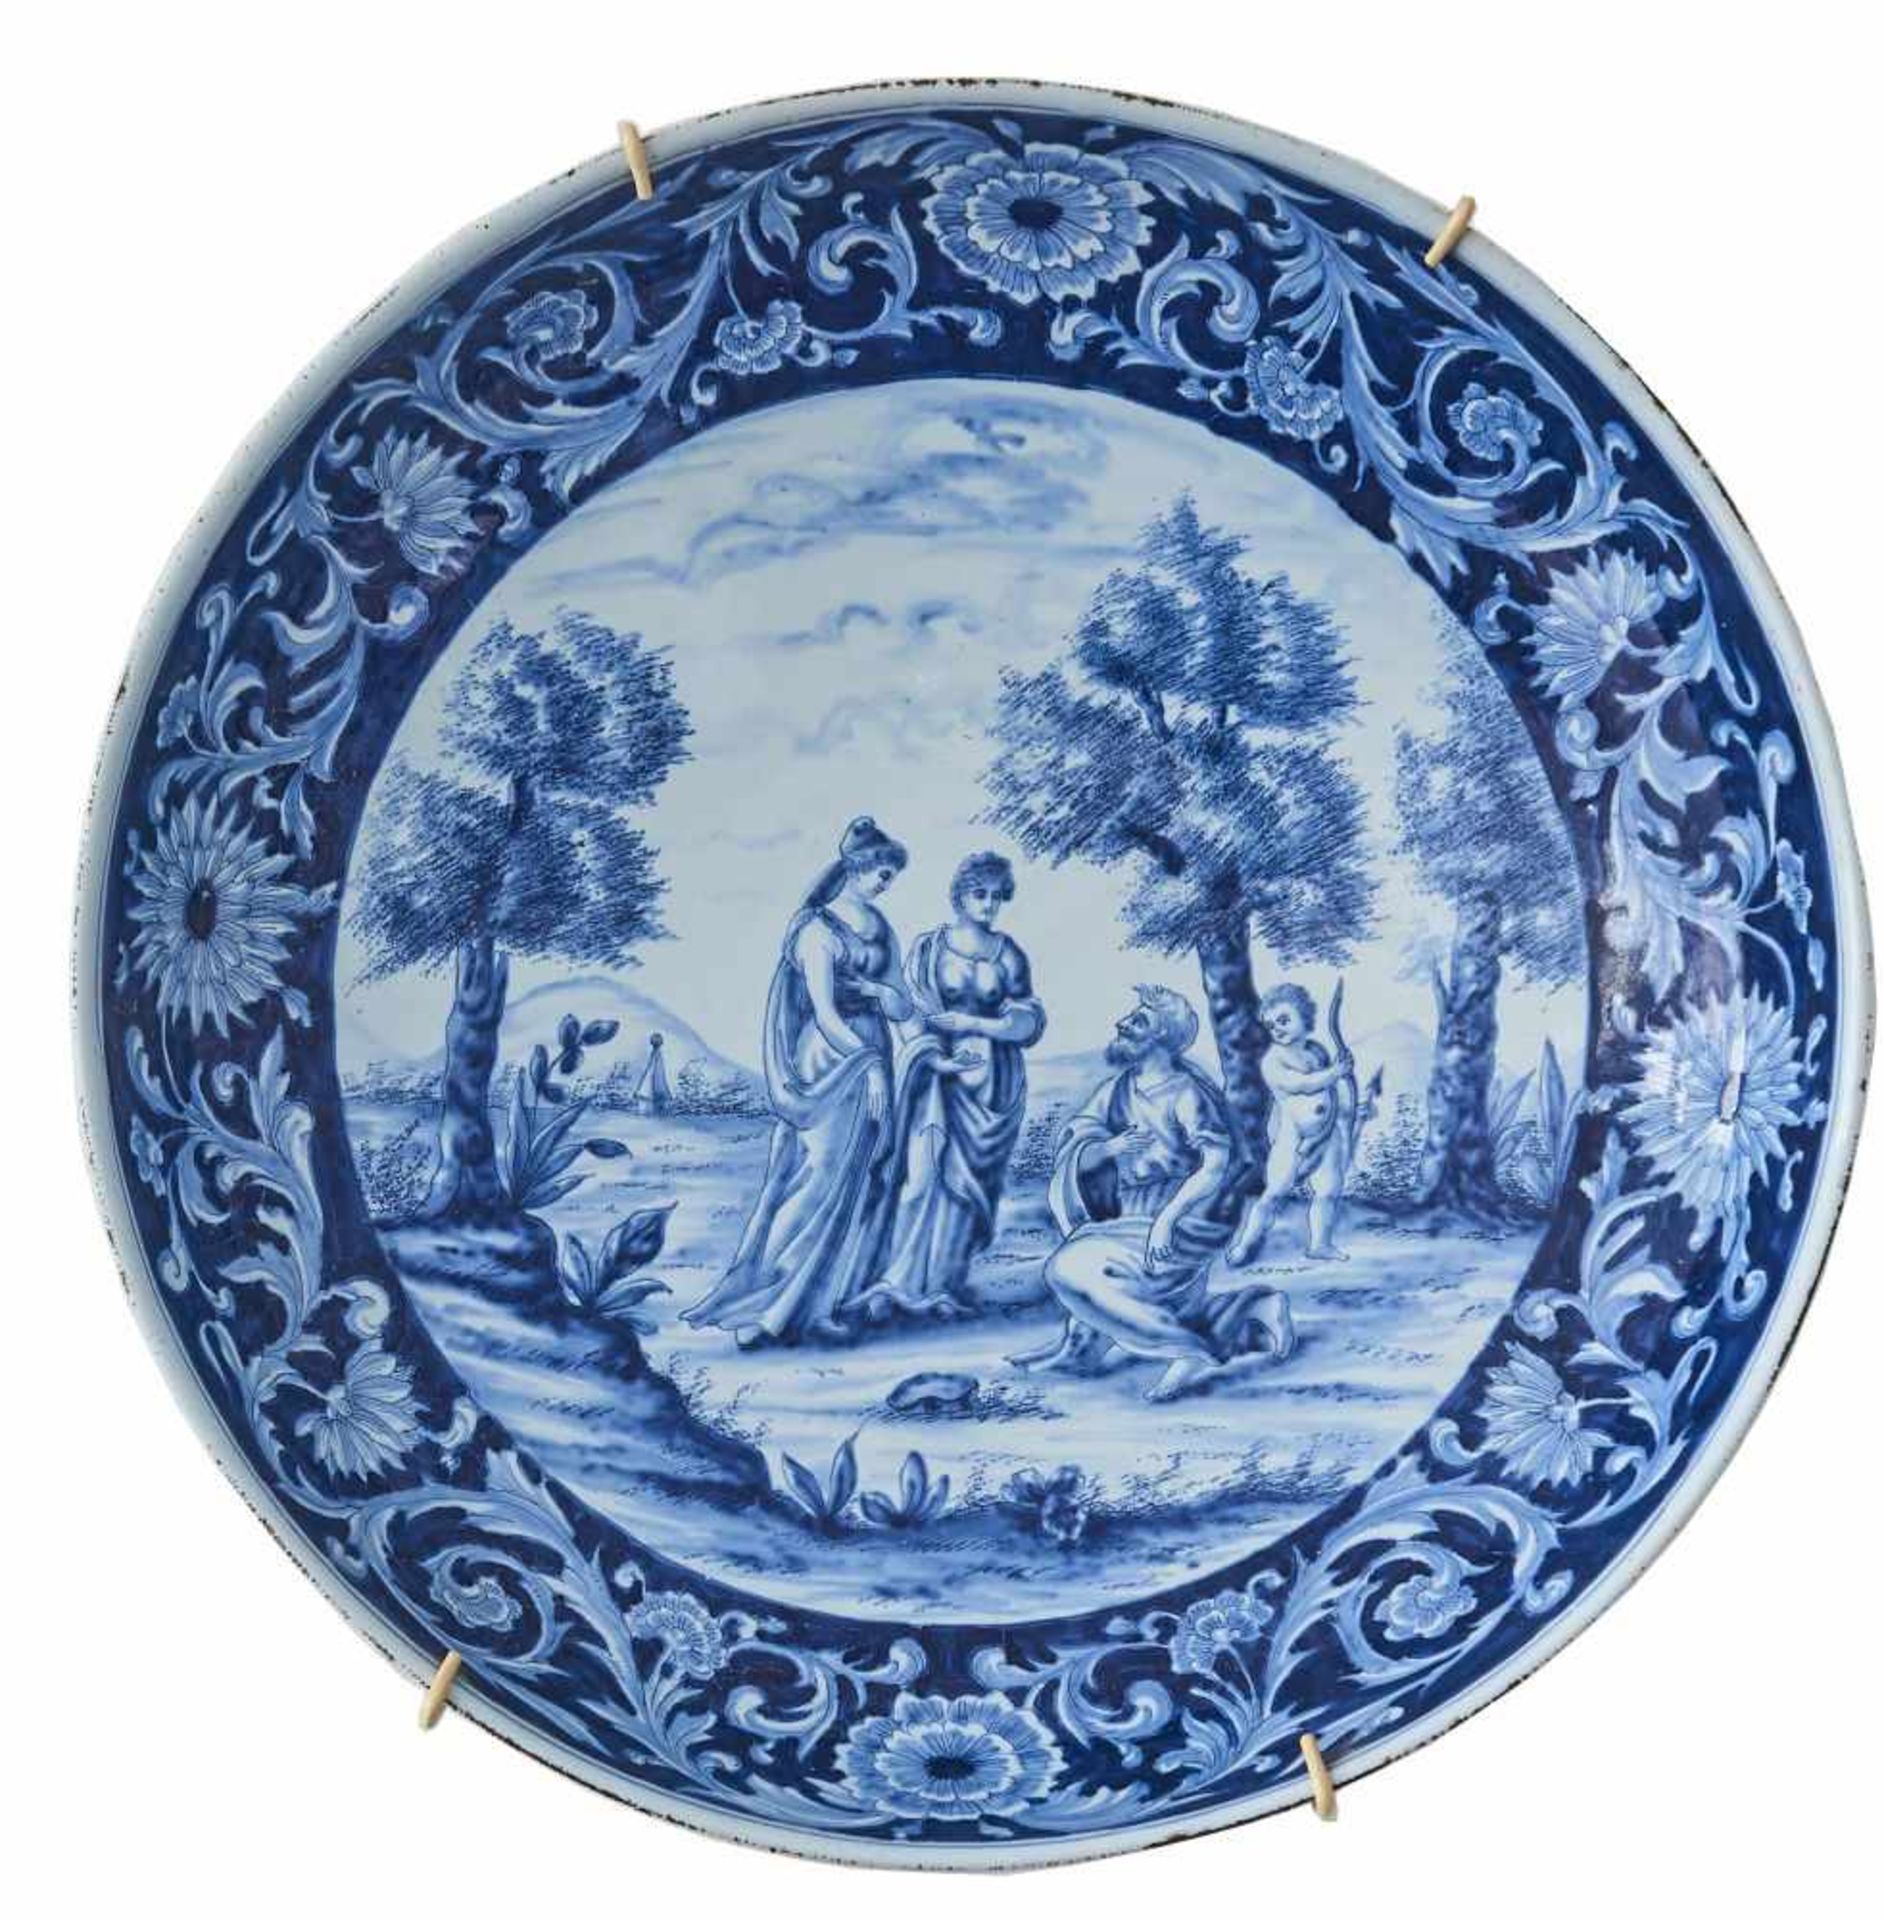 Großer Teller Delft, 18. Jhdt.Keramik, rückseitig altes Etikett mit Bezeichnung Antonius Pennis,